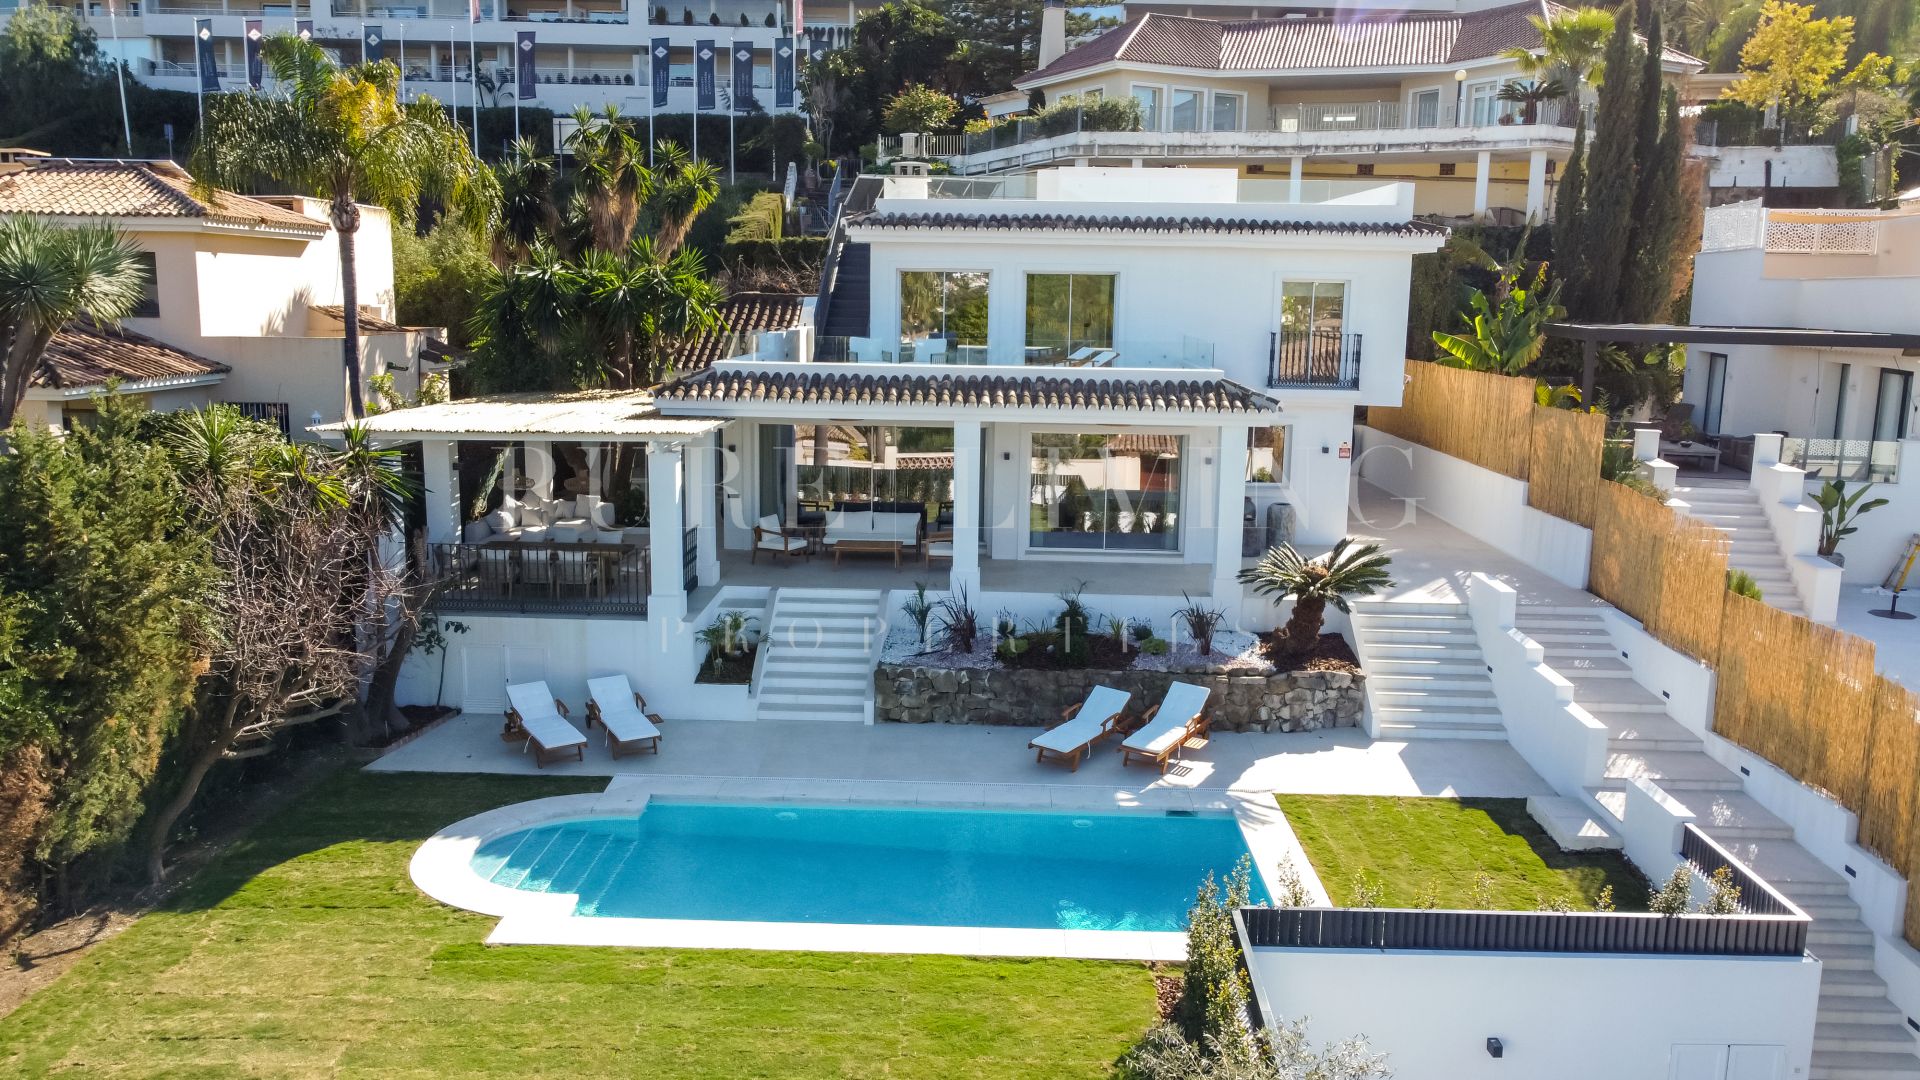 Villa de six chambres récemment rénovée à vendre à proximité des terrains de golf de Las Brisas.